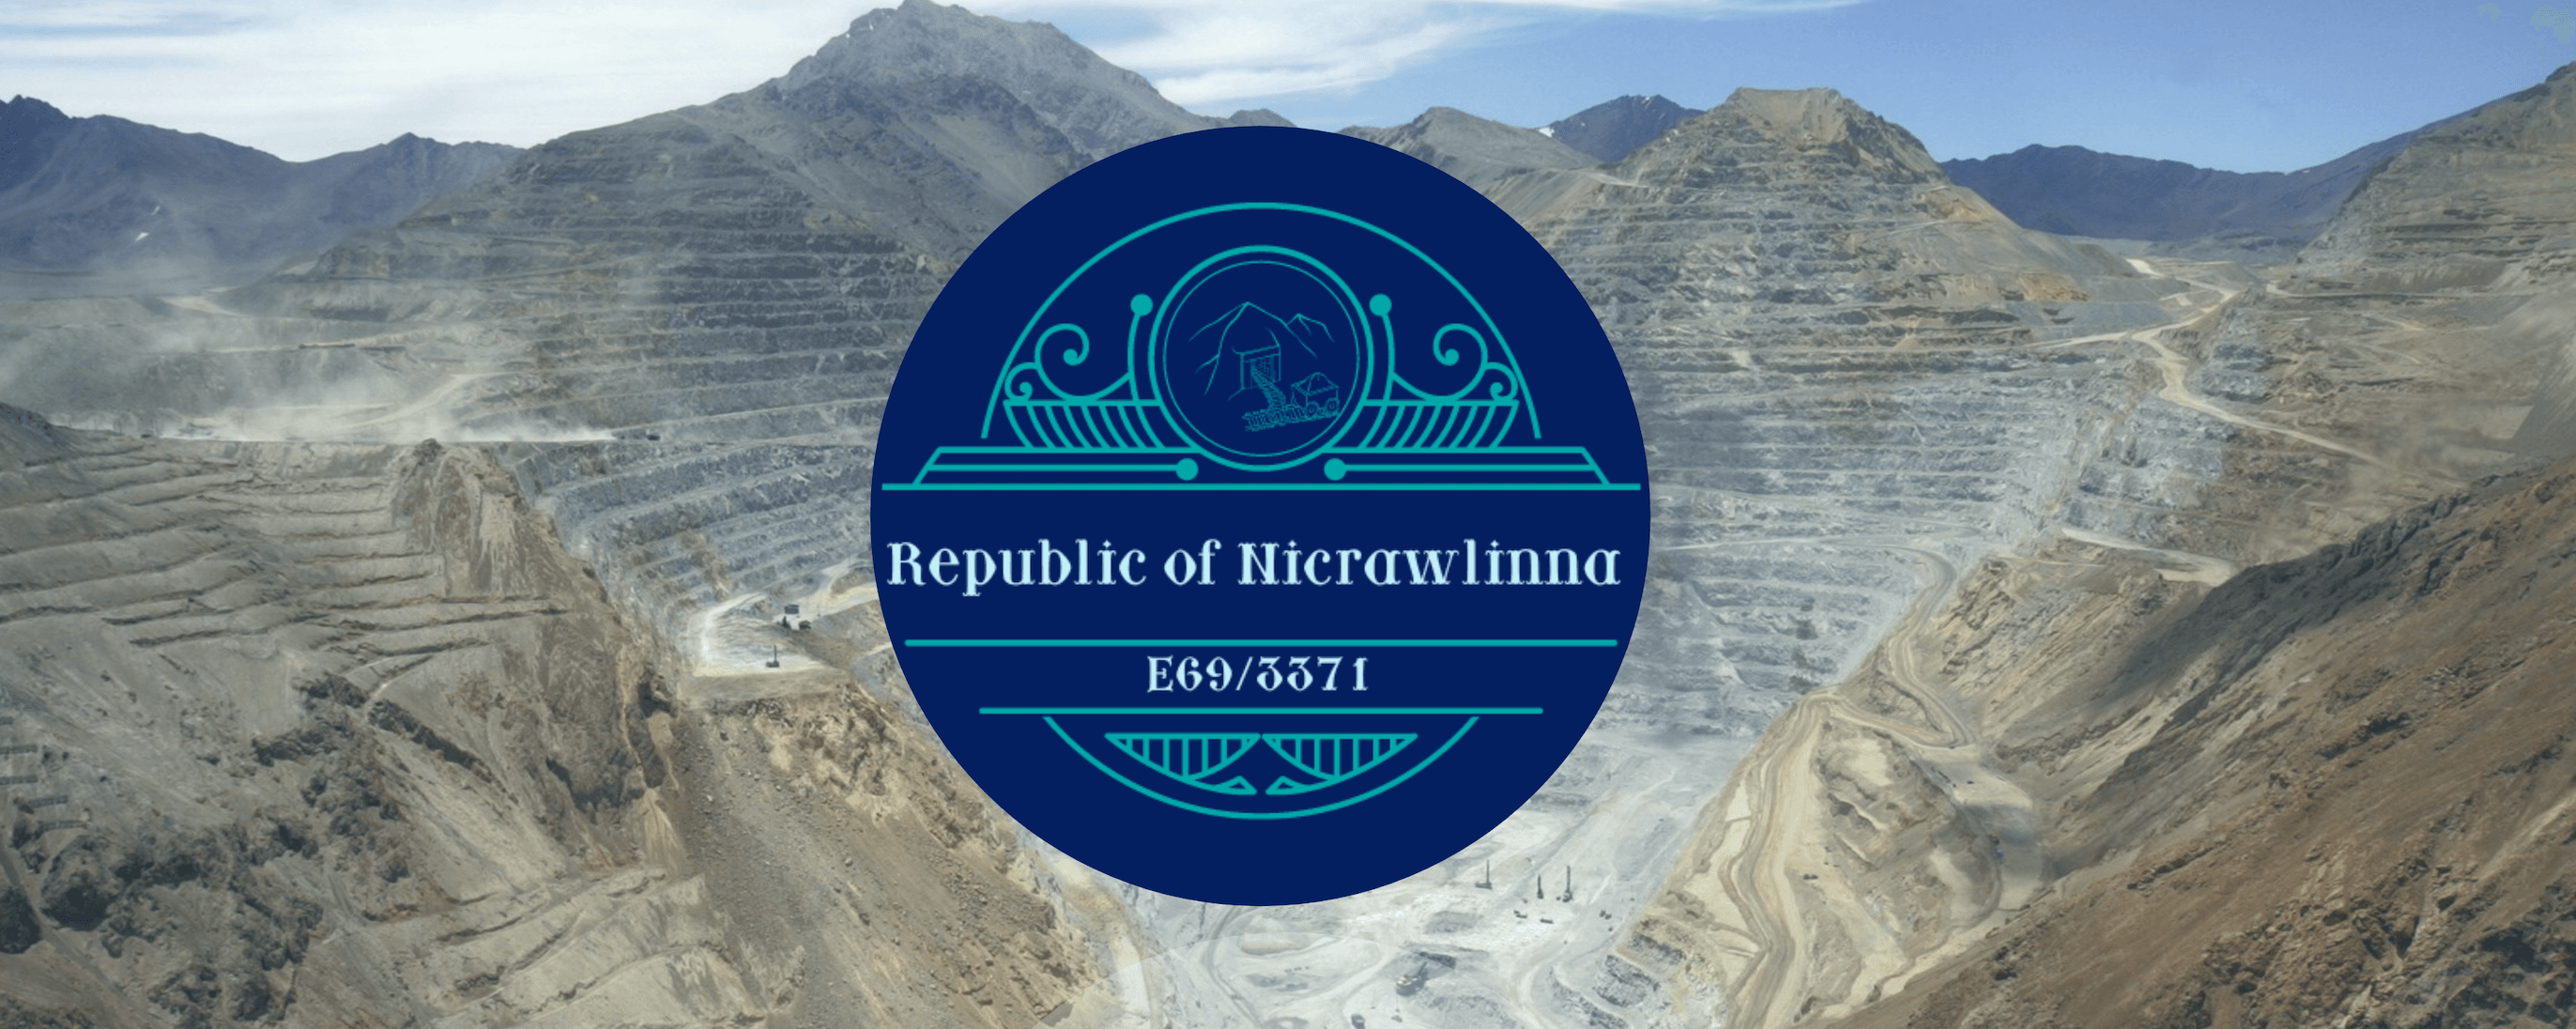 Republic of Nicrawlinna